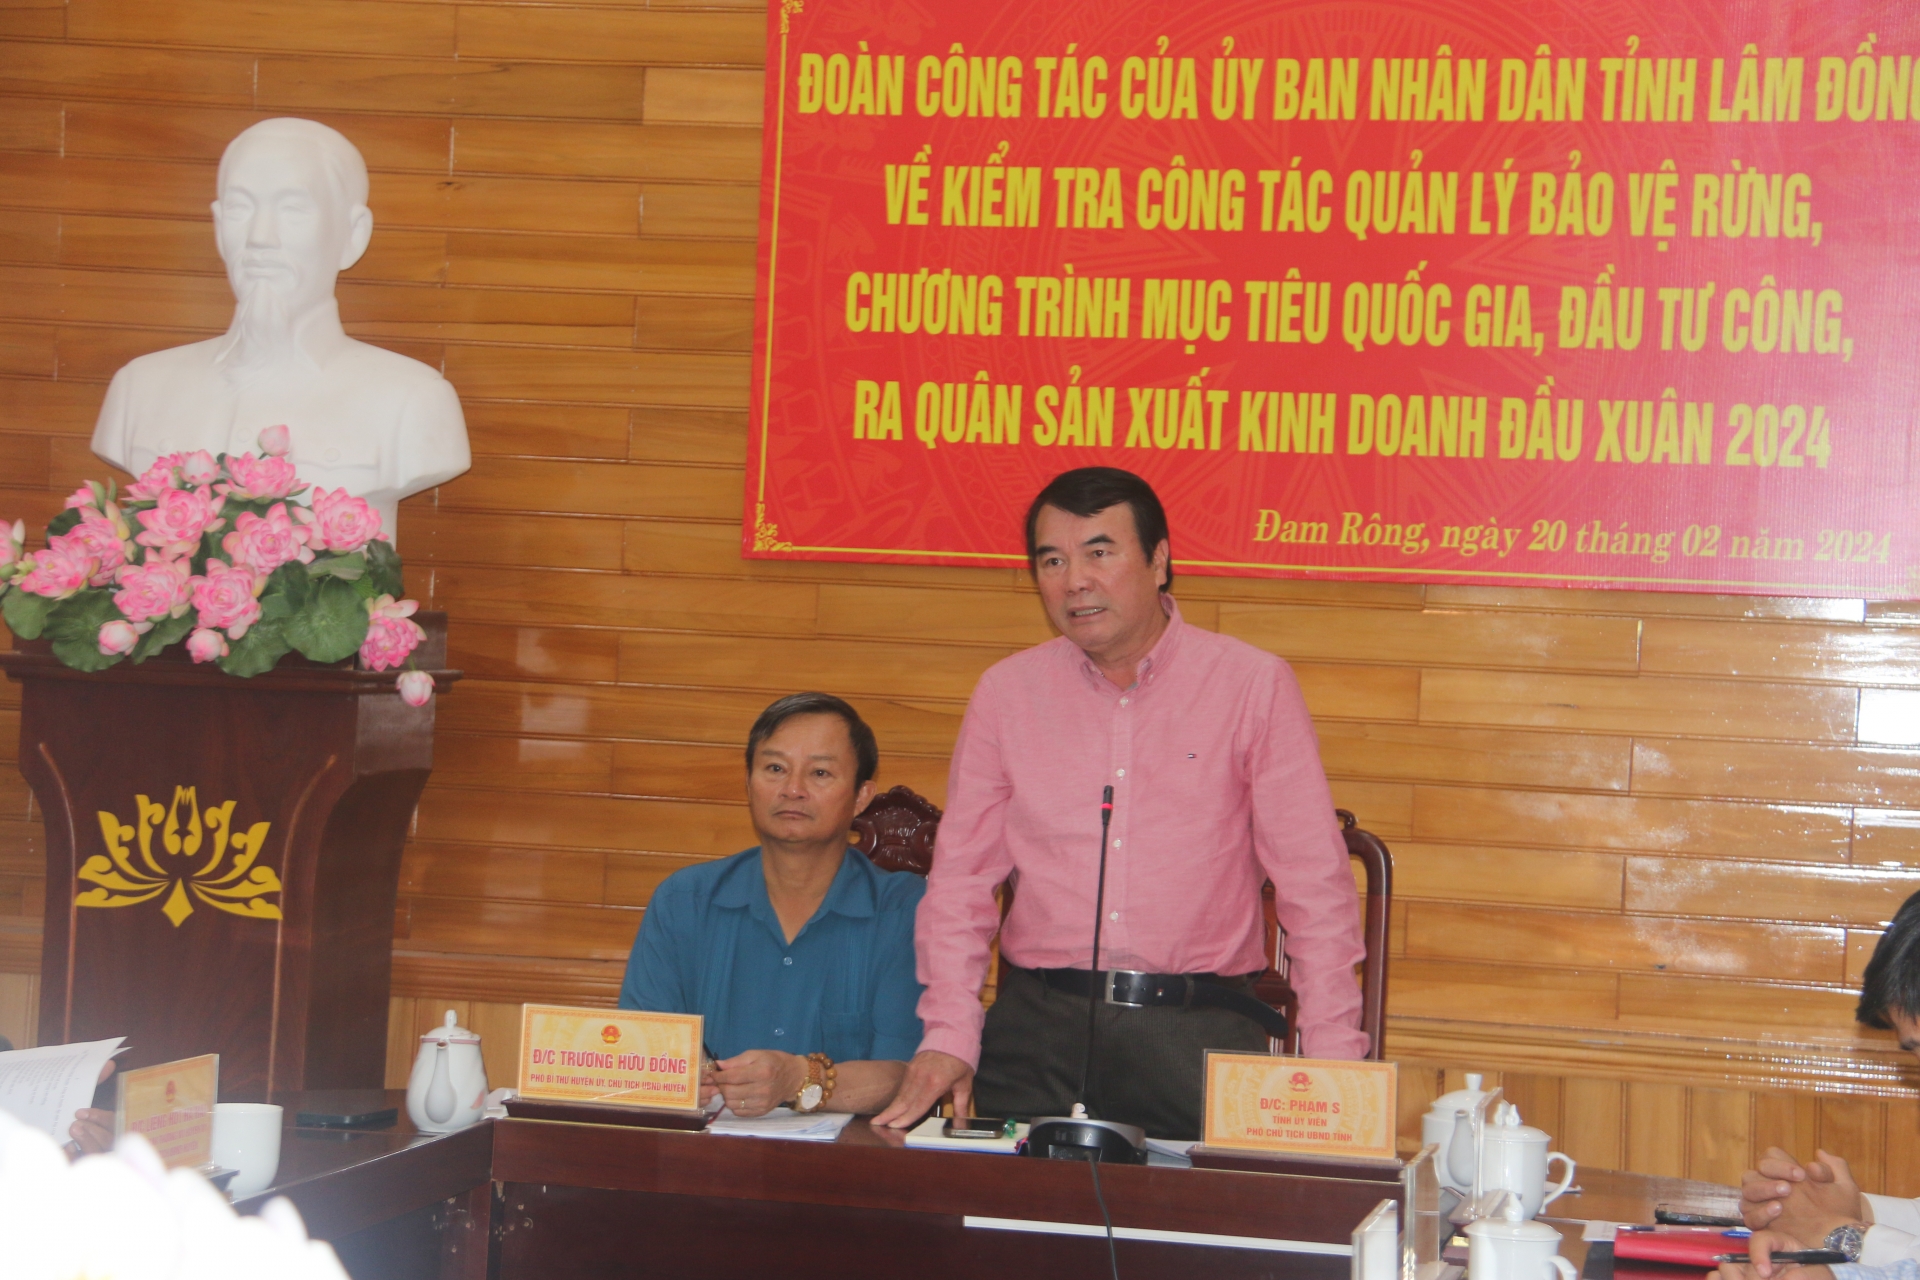 Đồng chí Phạm S – Phó Chủ tịch UBND tỉnh chủ trì buổi làm việc

